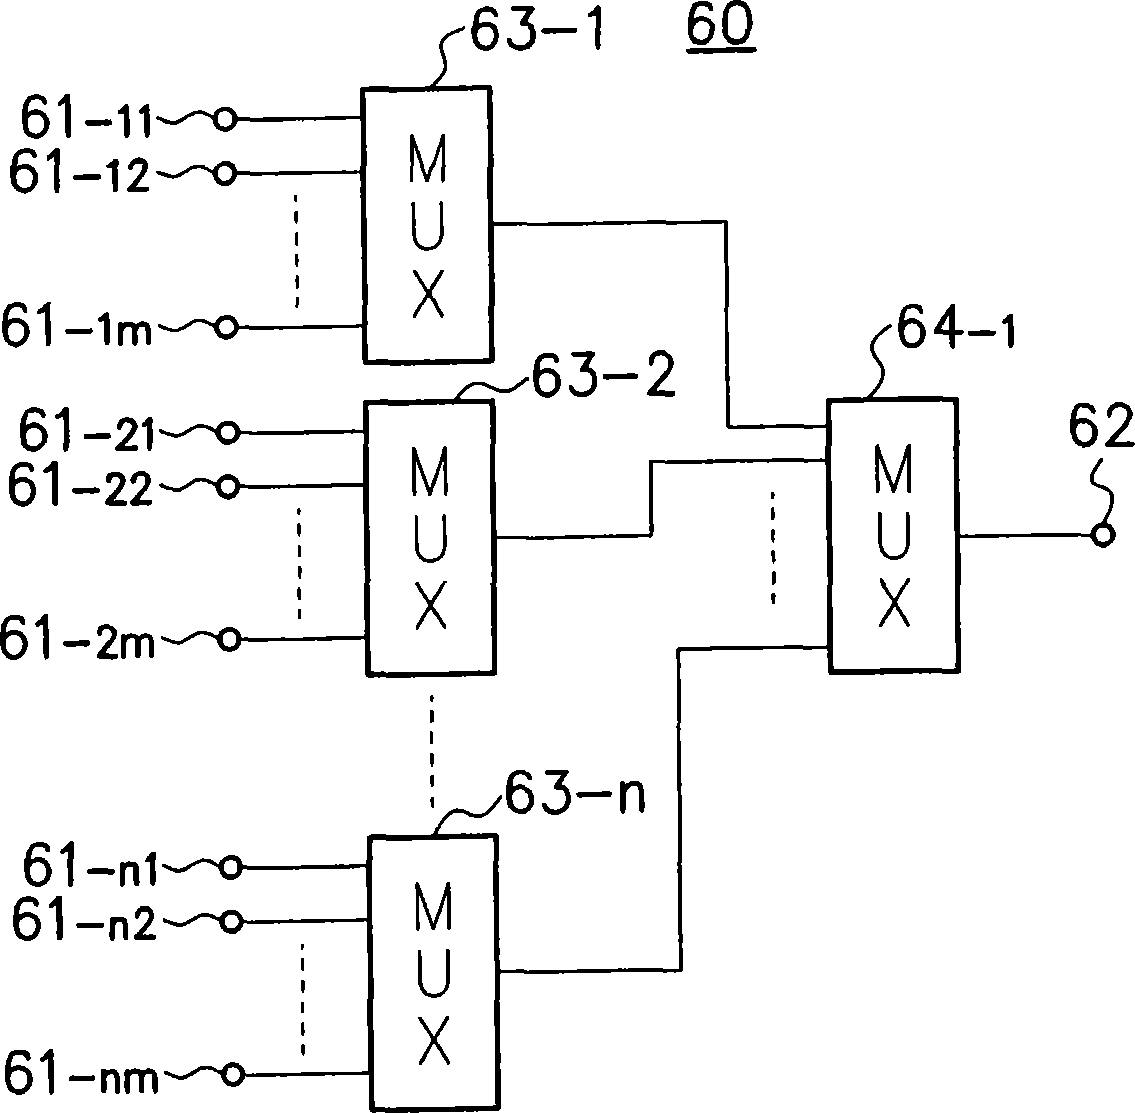 Multiplexer circuit